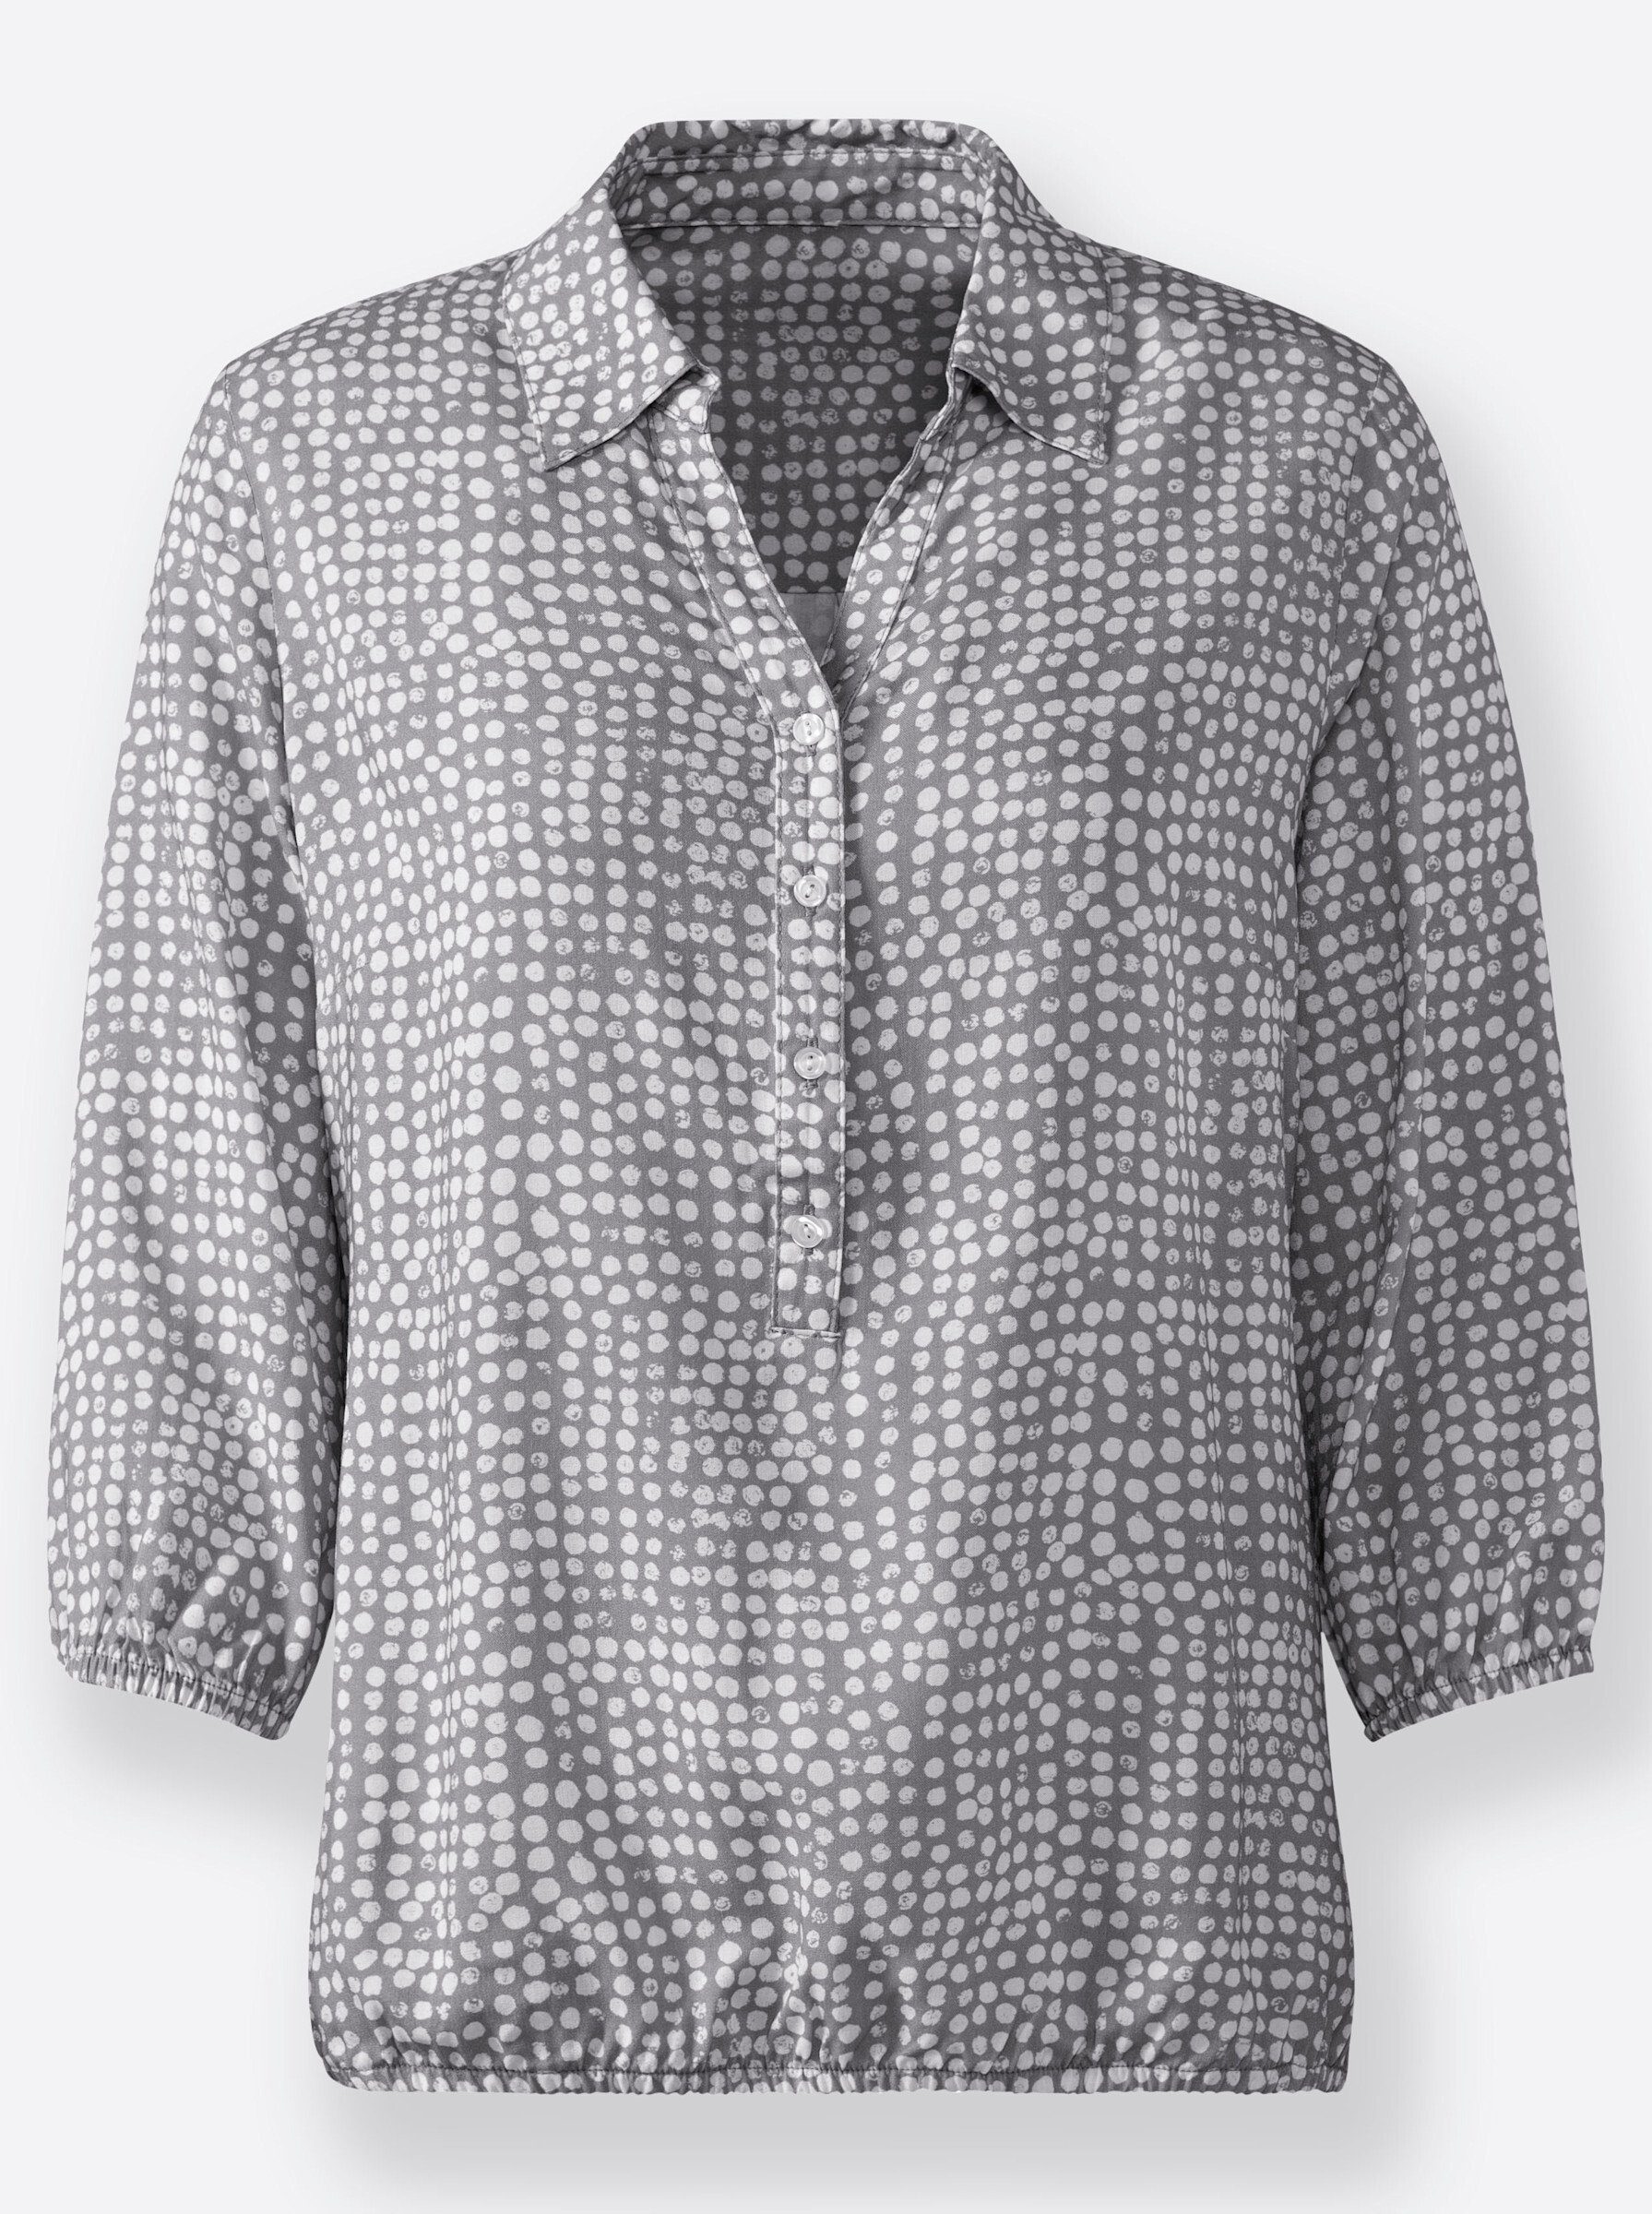 grau-weiß-bedruckt Bluse WEIDEN Klassische WITT